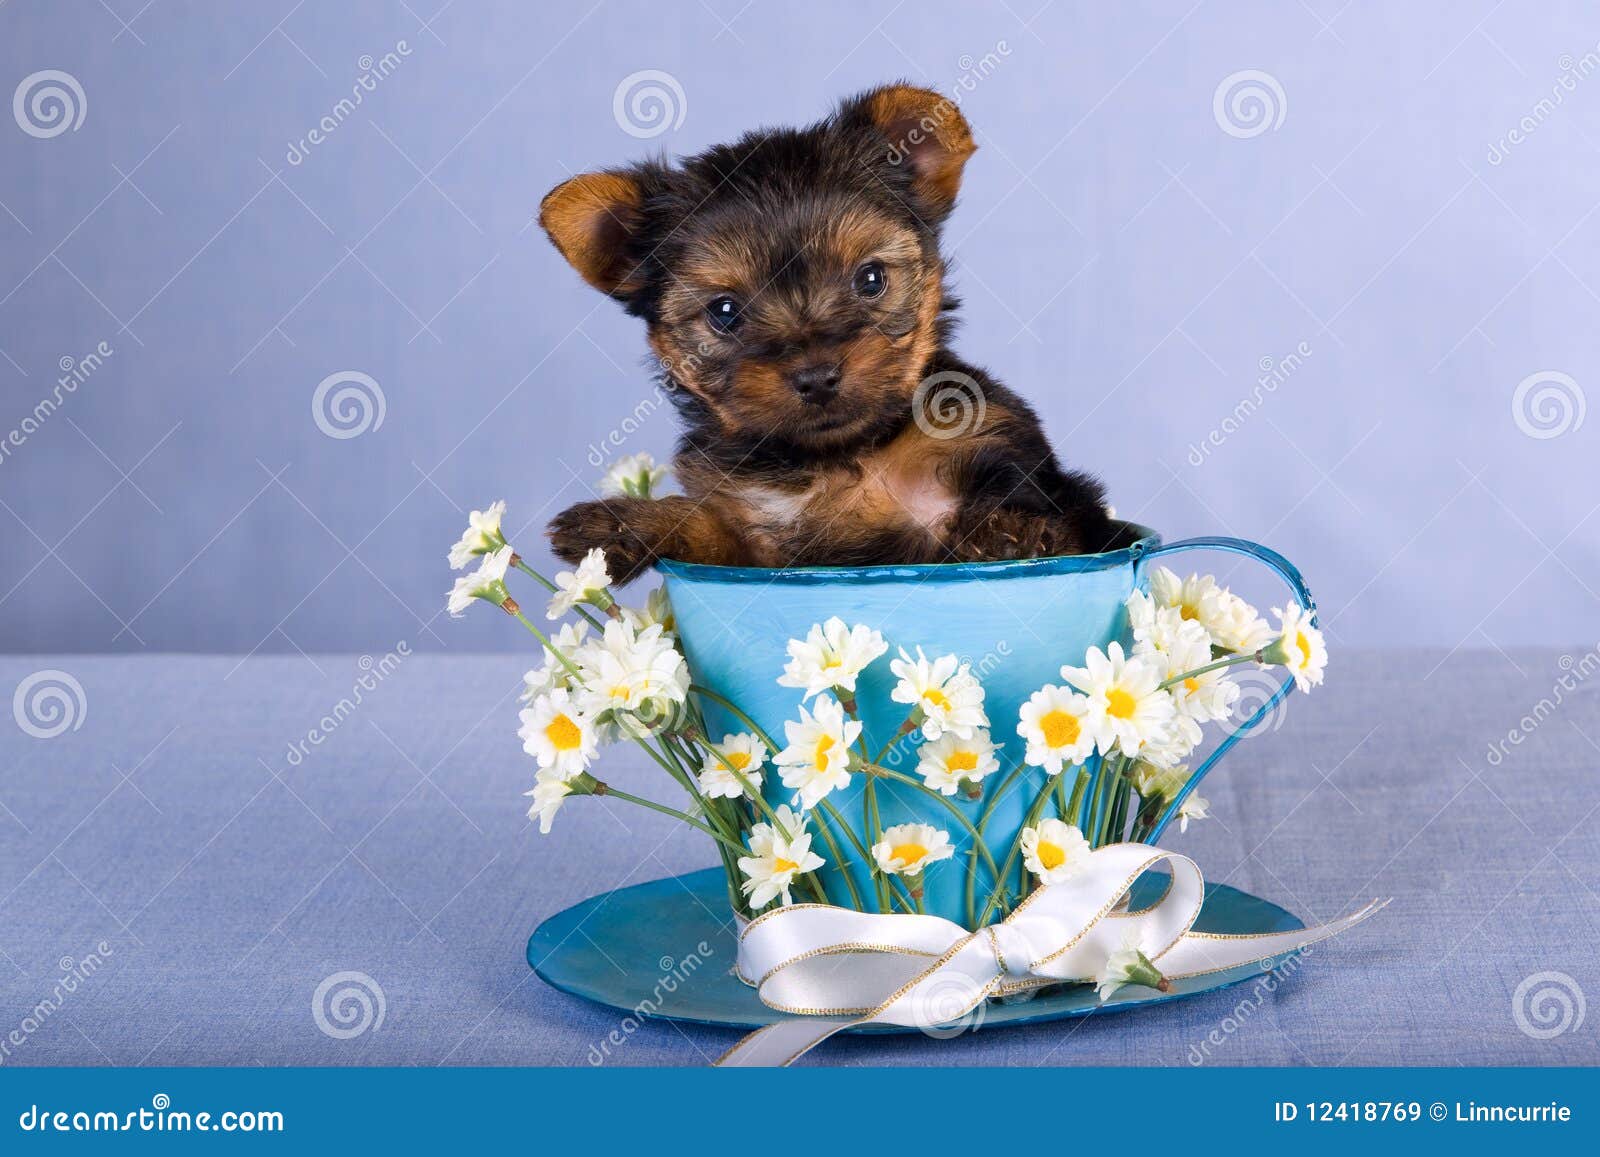 【1366x768】可爱茶杯犬桌面背景图片 - 彼岸桌面